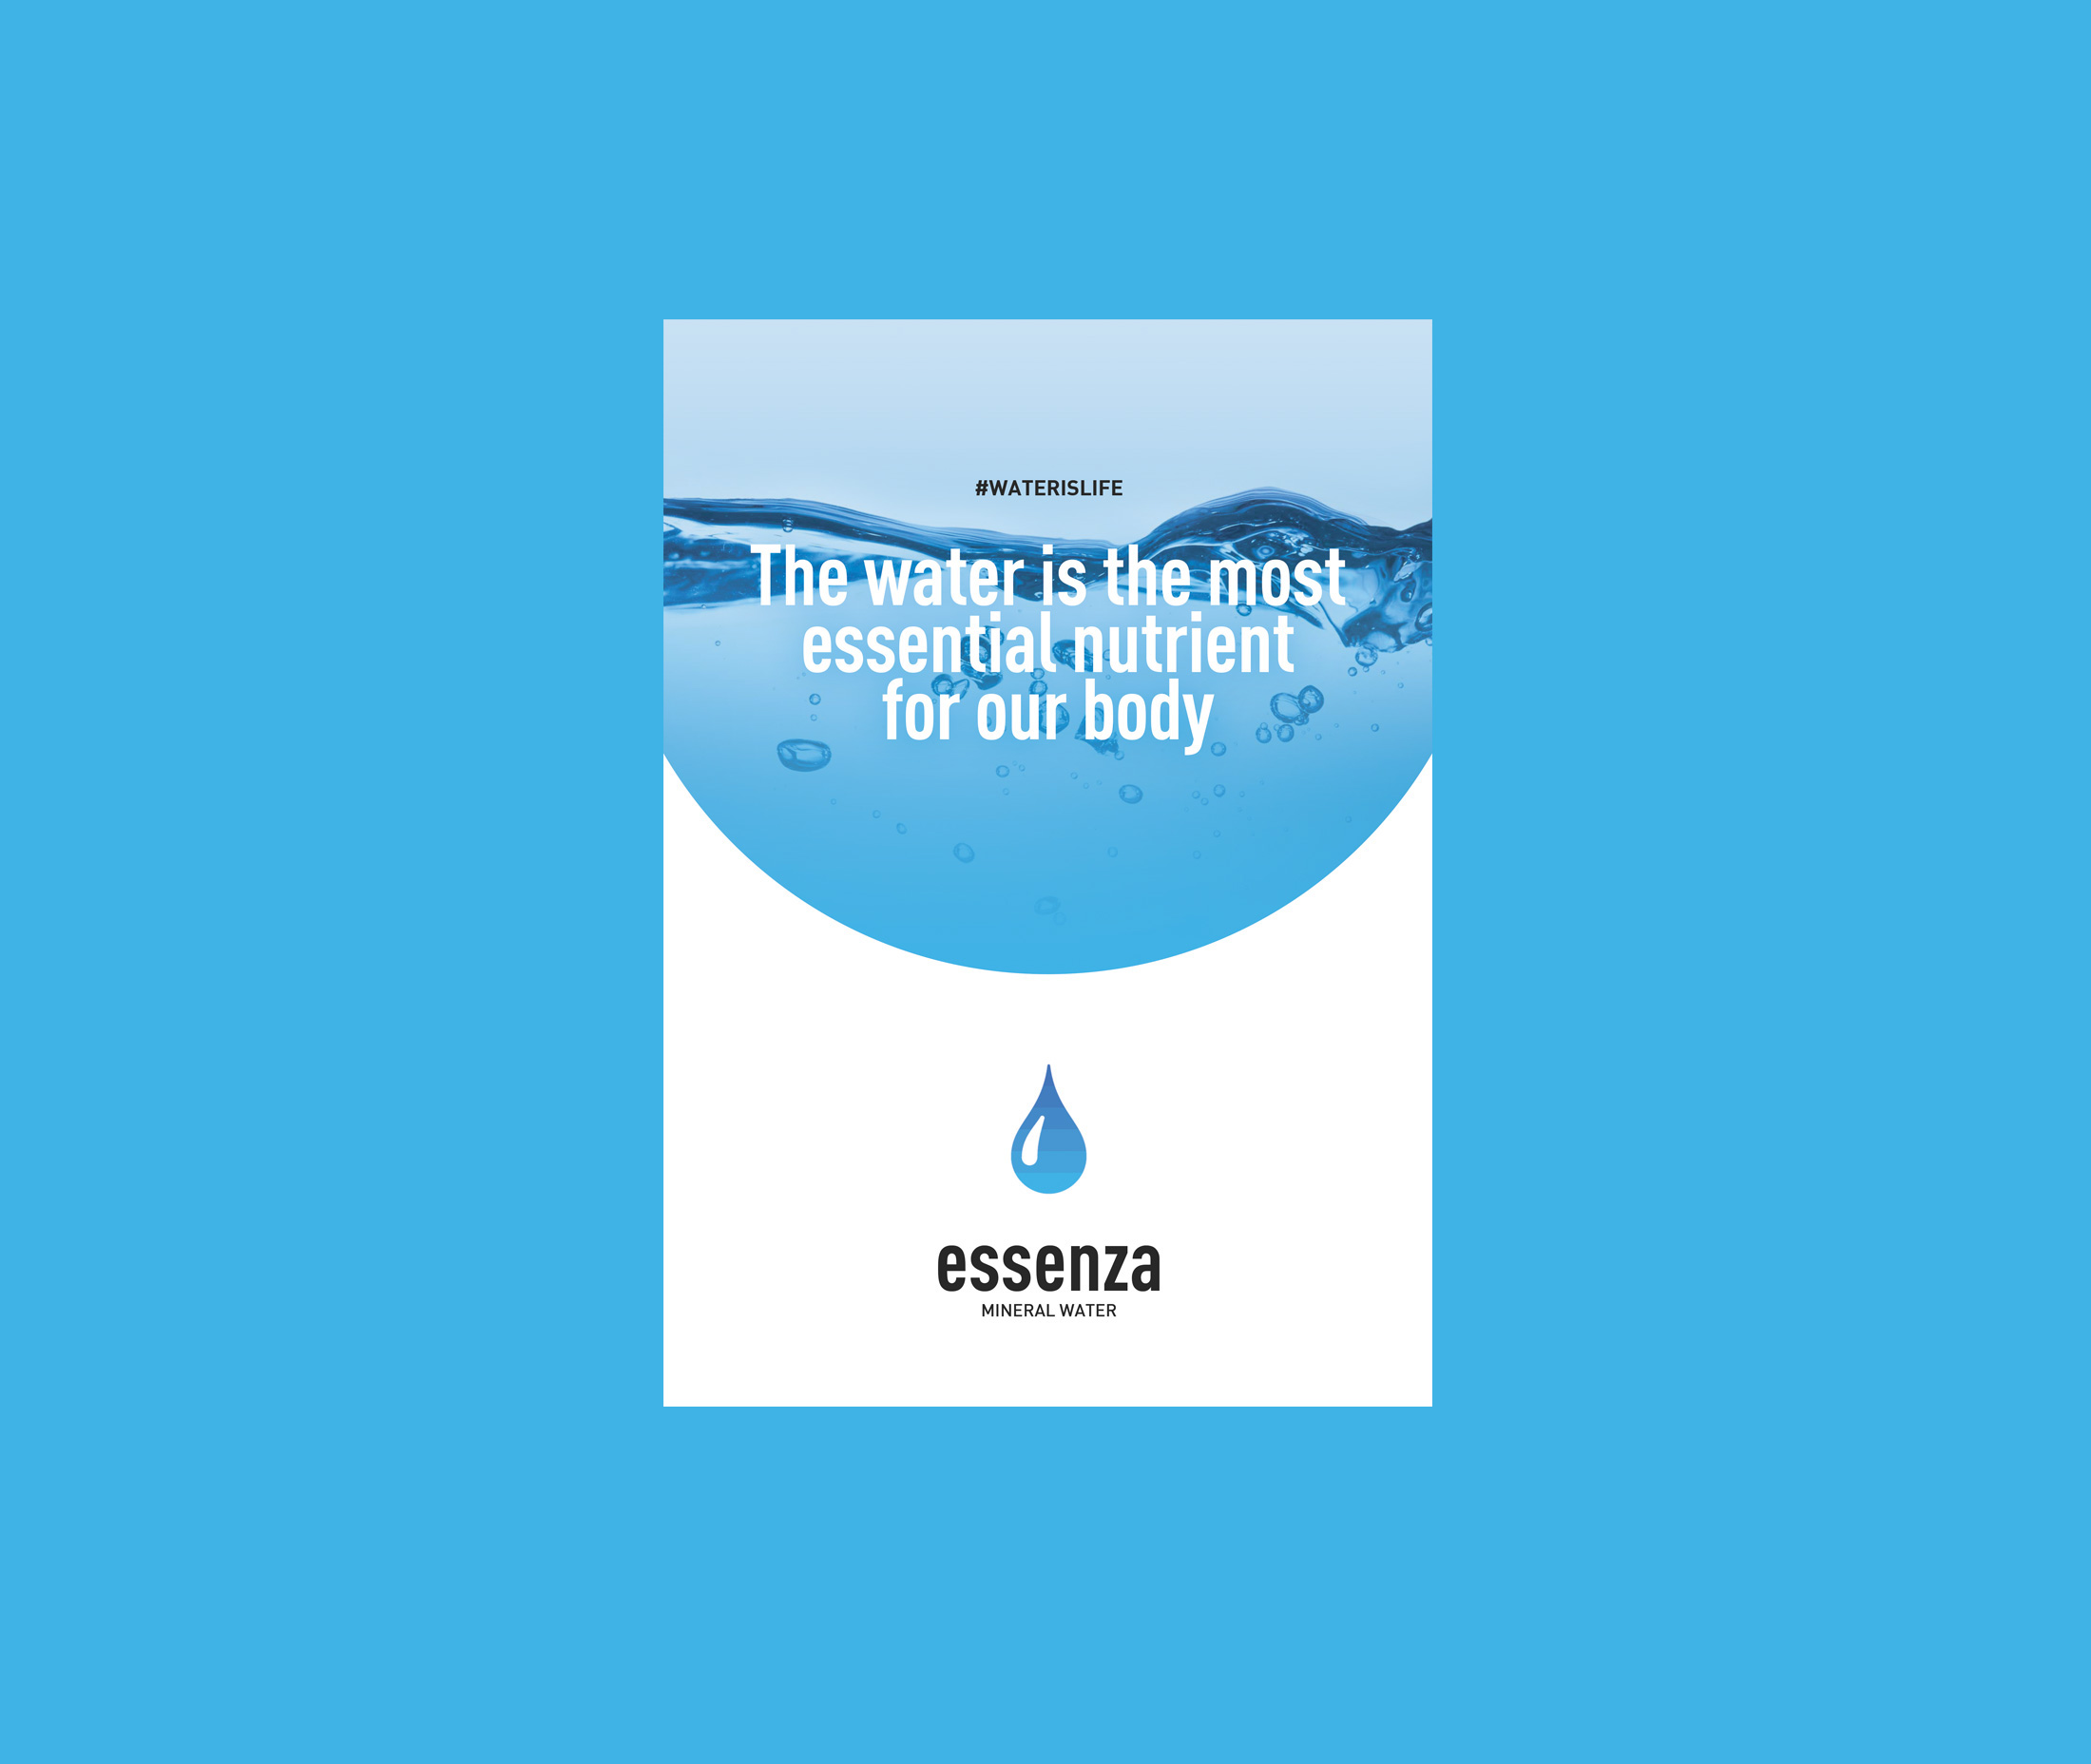 饮用水品牌essenza视觉形象设计